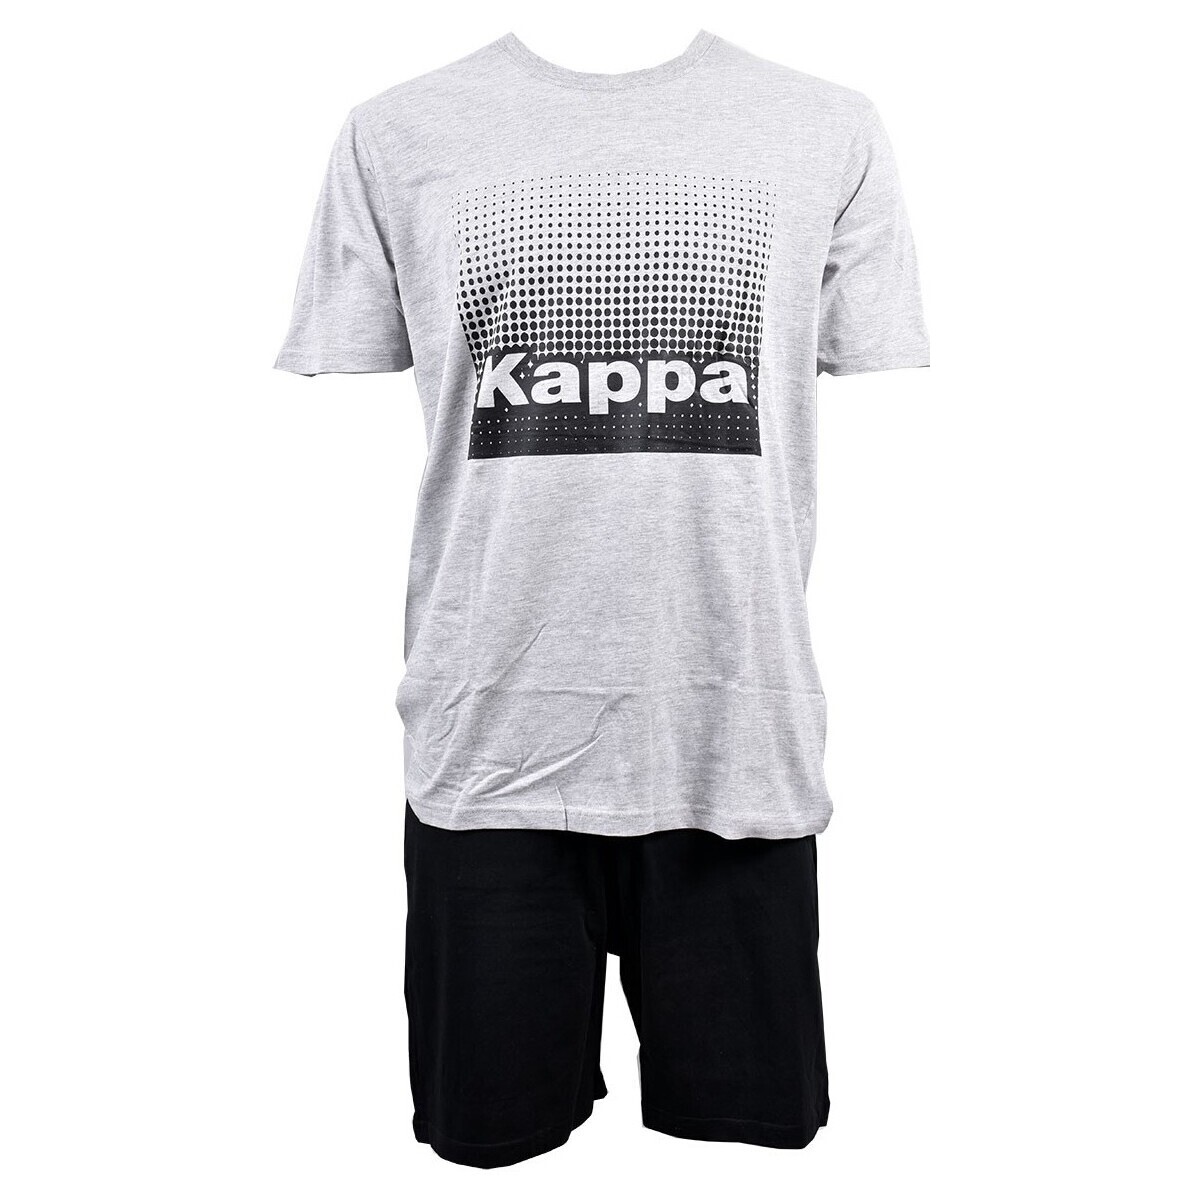 Vêtements Homme Pyjamas / Chemises de nuit Kappa 0434 G Gris